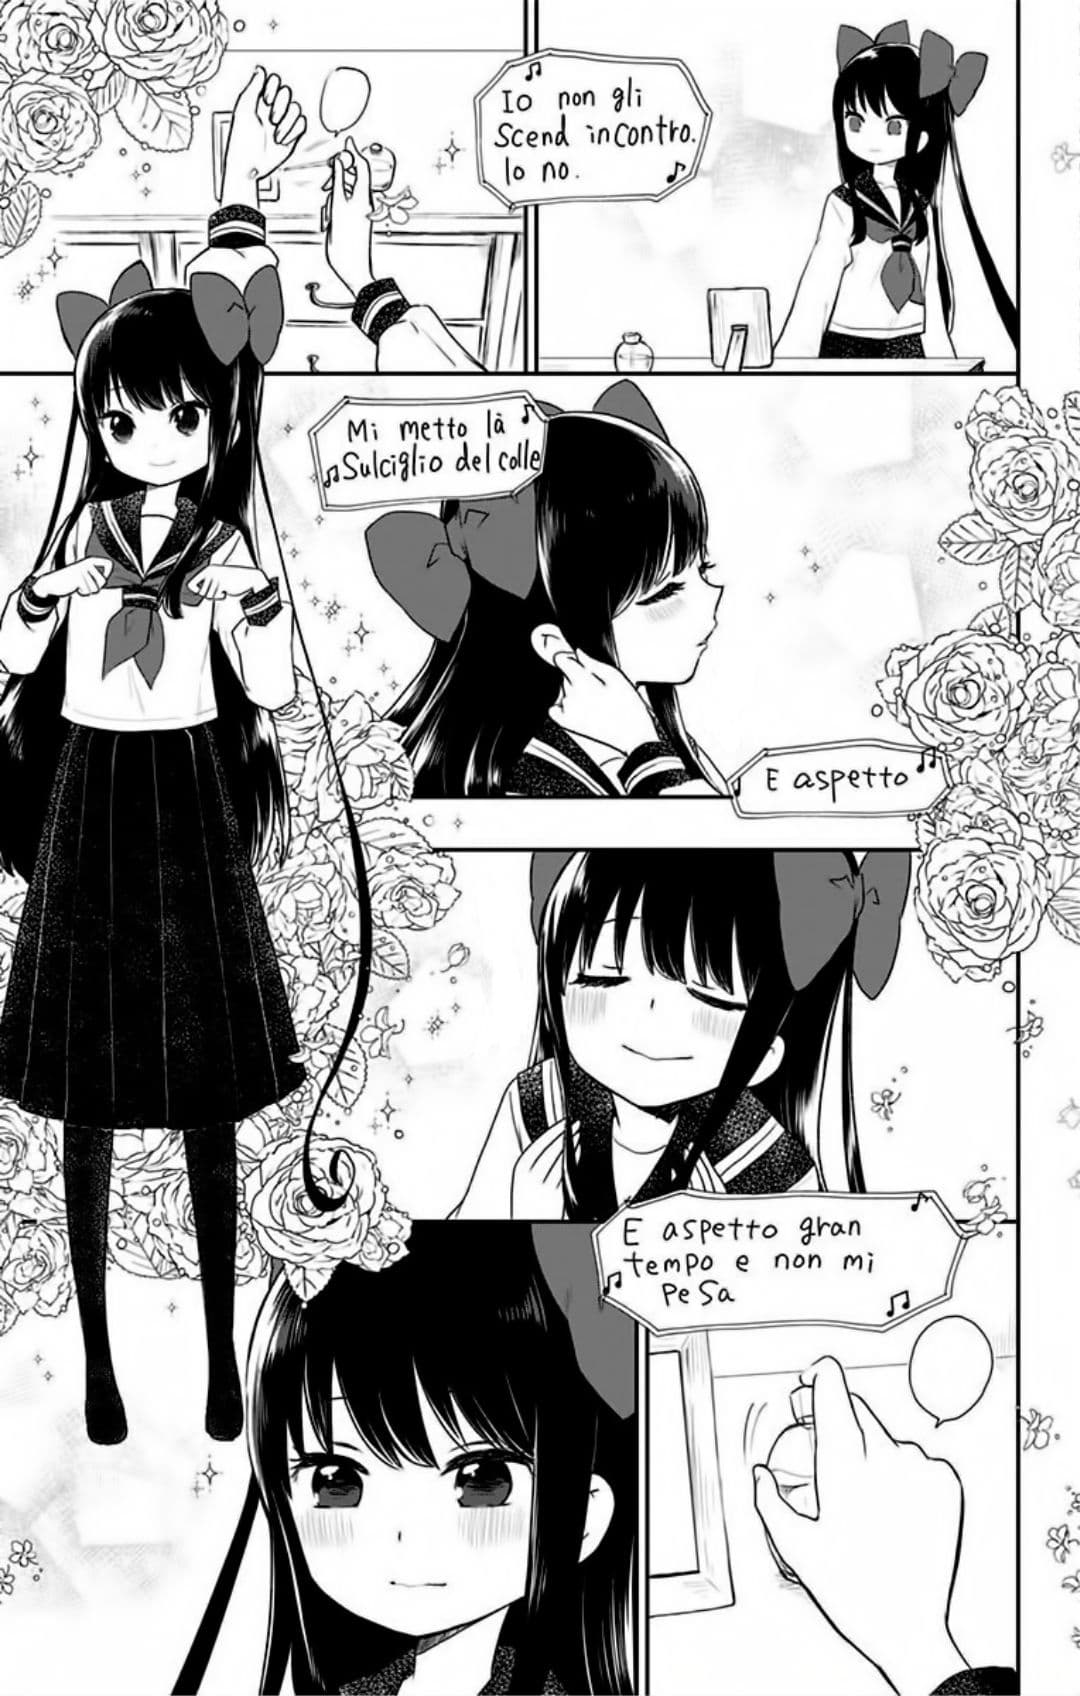 Shouwa Otome Otogibanashi เรื่องเล่าของสาวน้อย ยุคโชวะ ตอนที่ 2 (7)